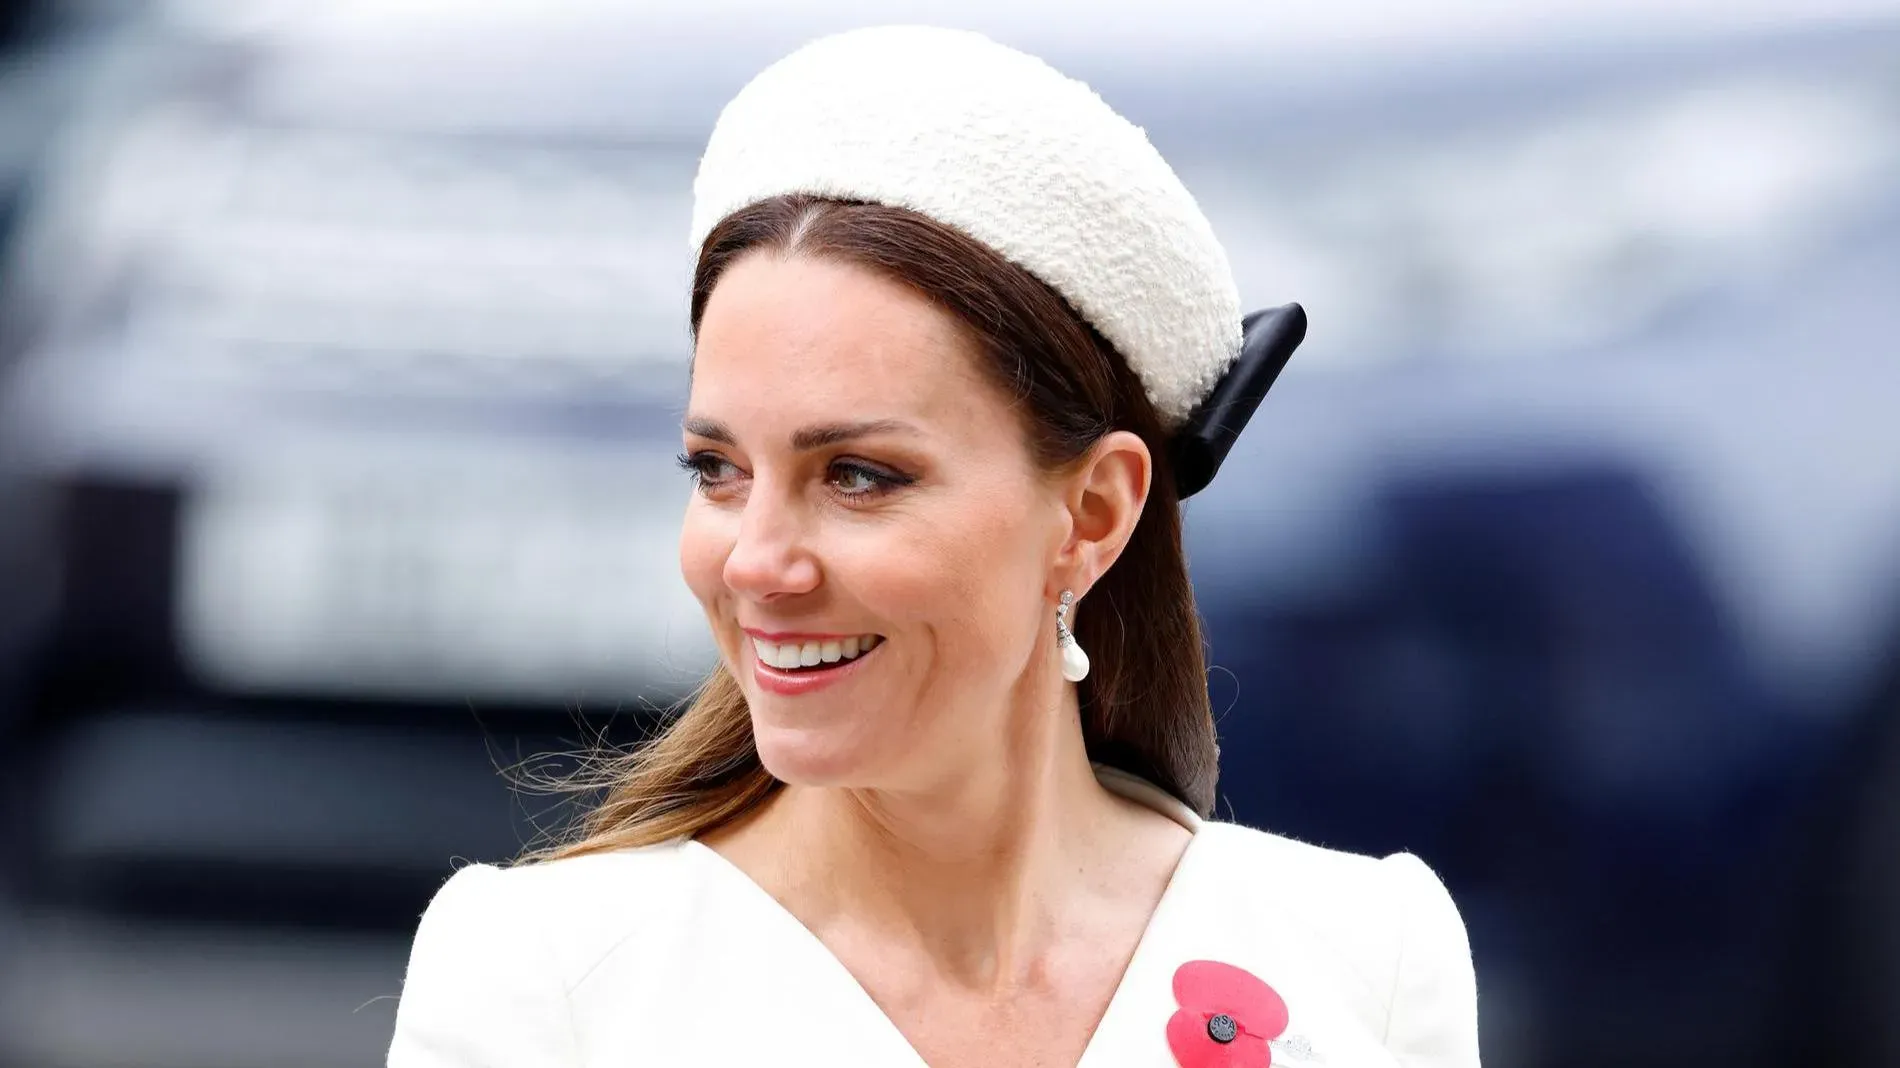 
											
											Kate Middleton saraton kasalligiga chalingan
											
											